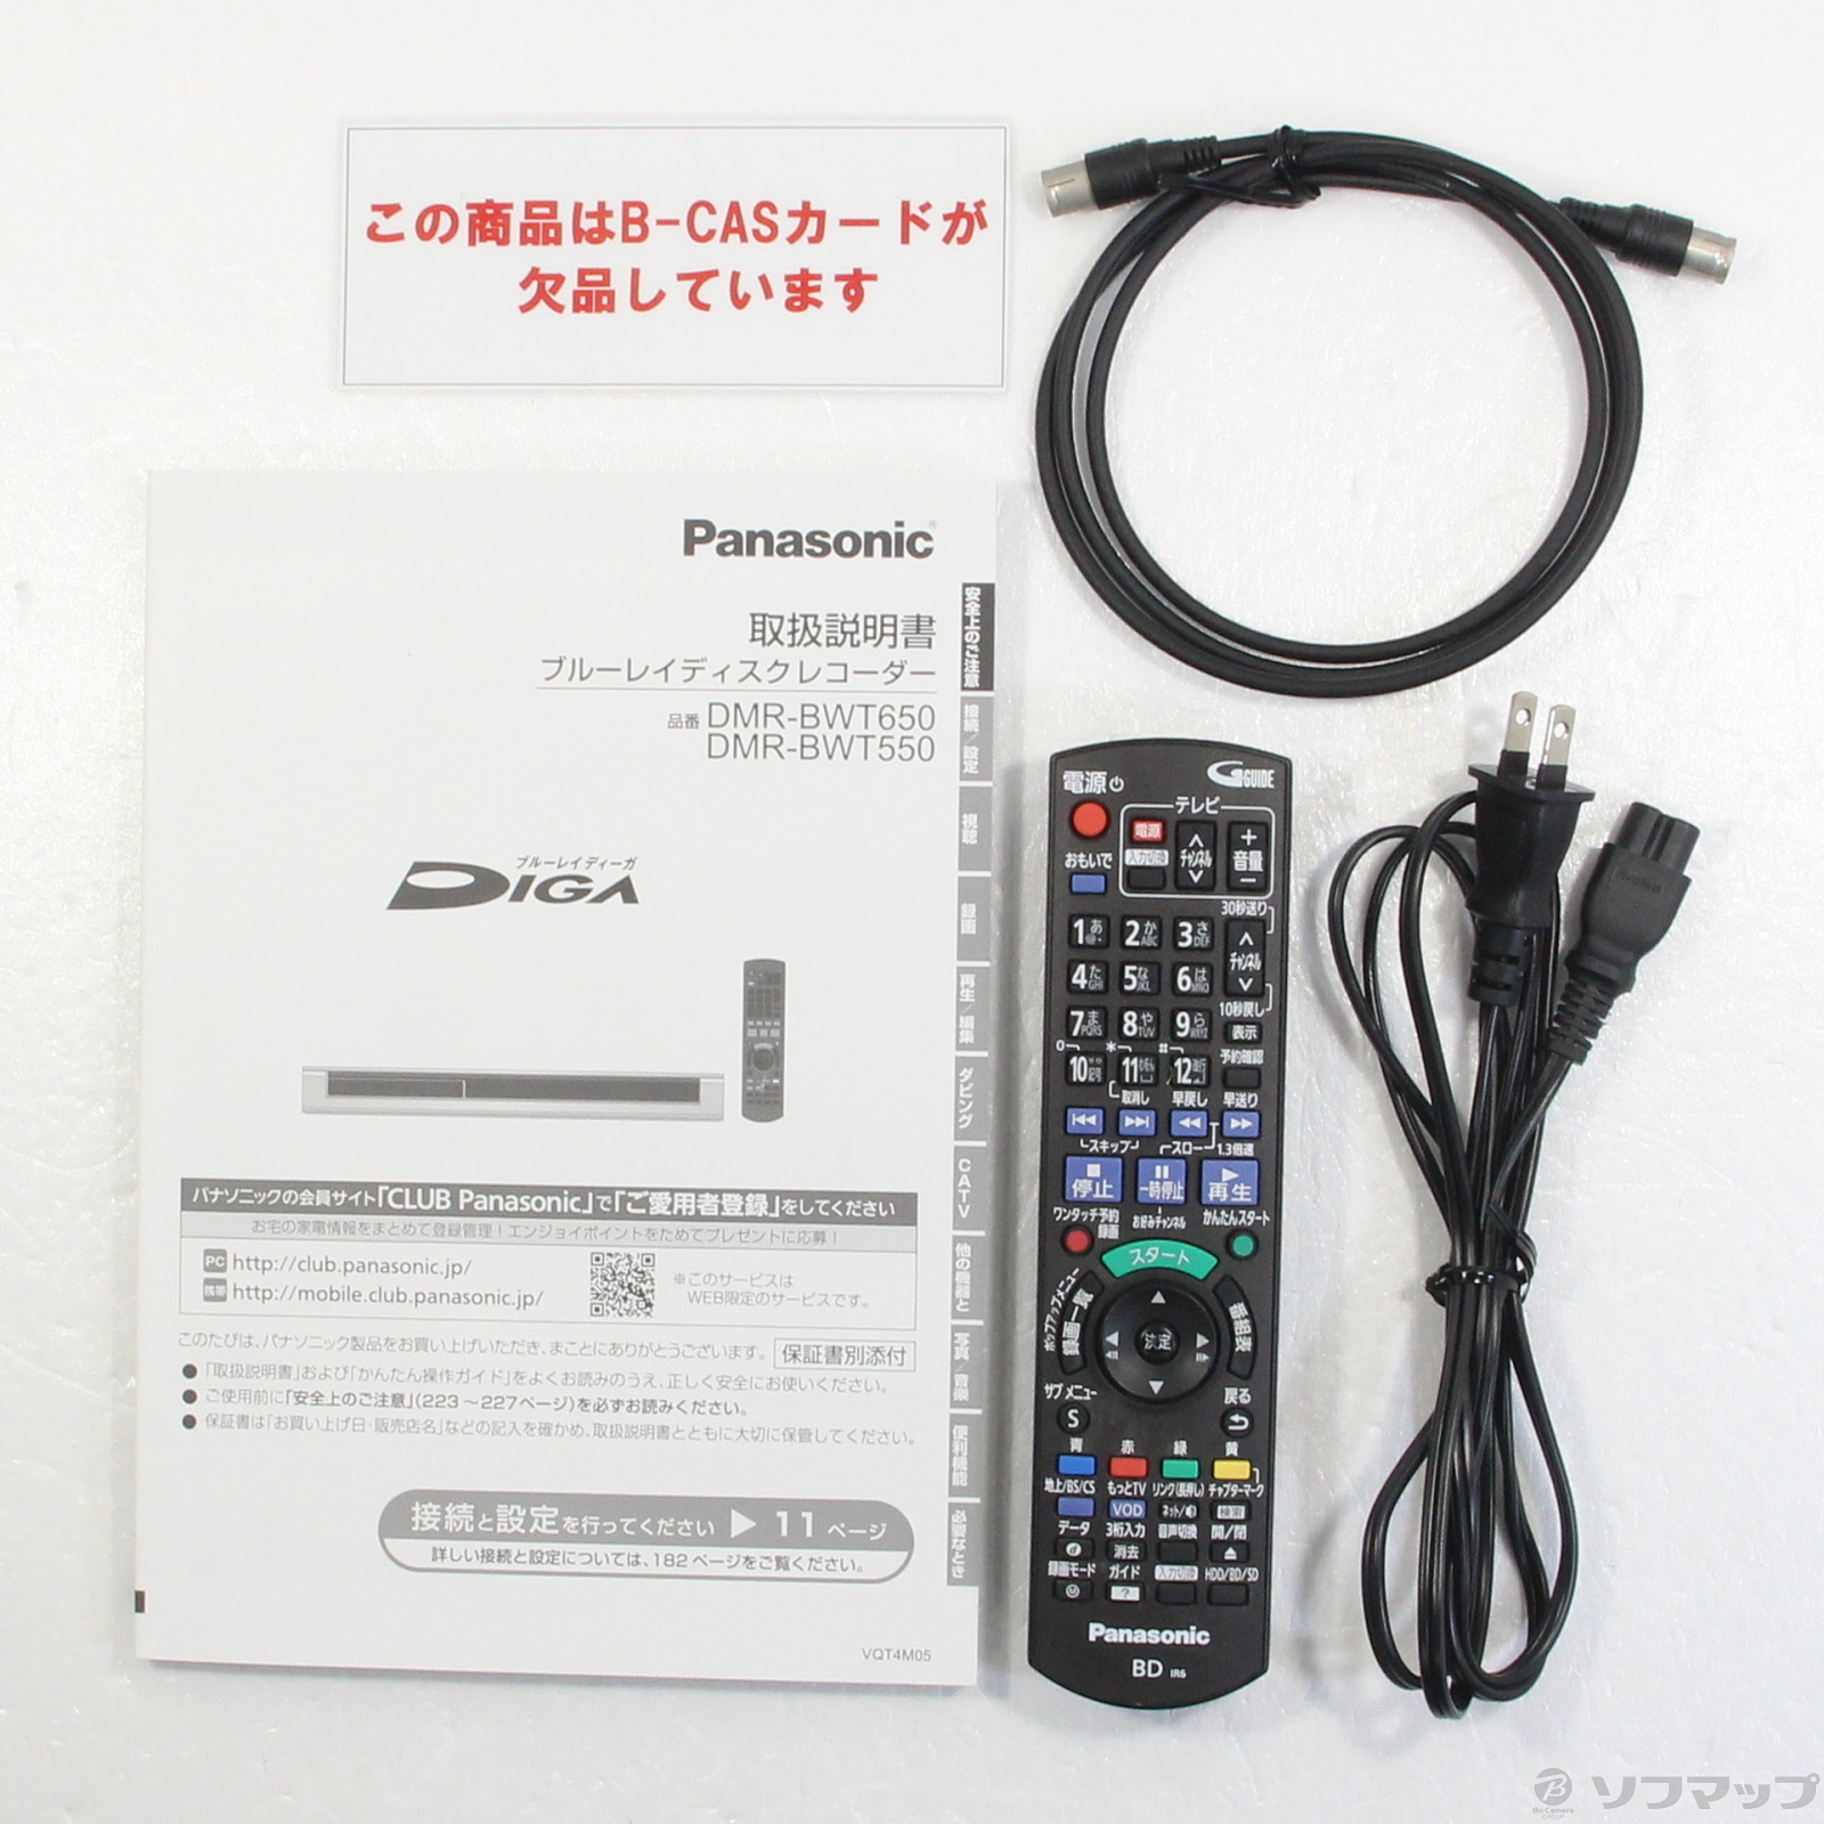 Panasonic ブルーレイレコーダー DIGA DMR-BWT650 1TB-